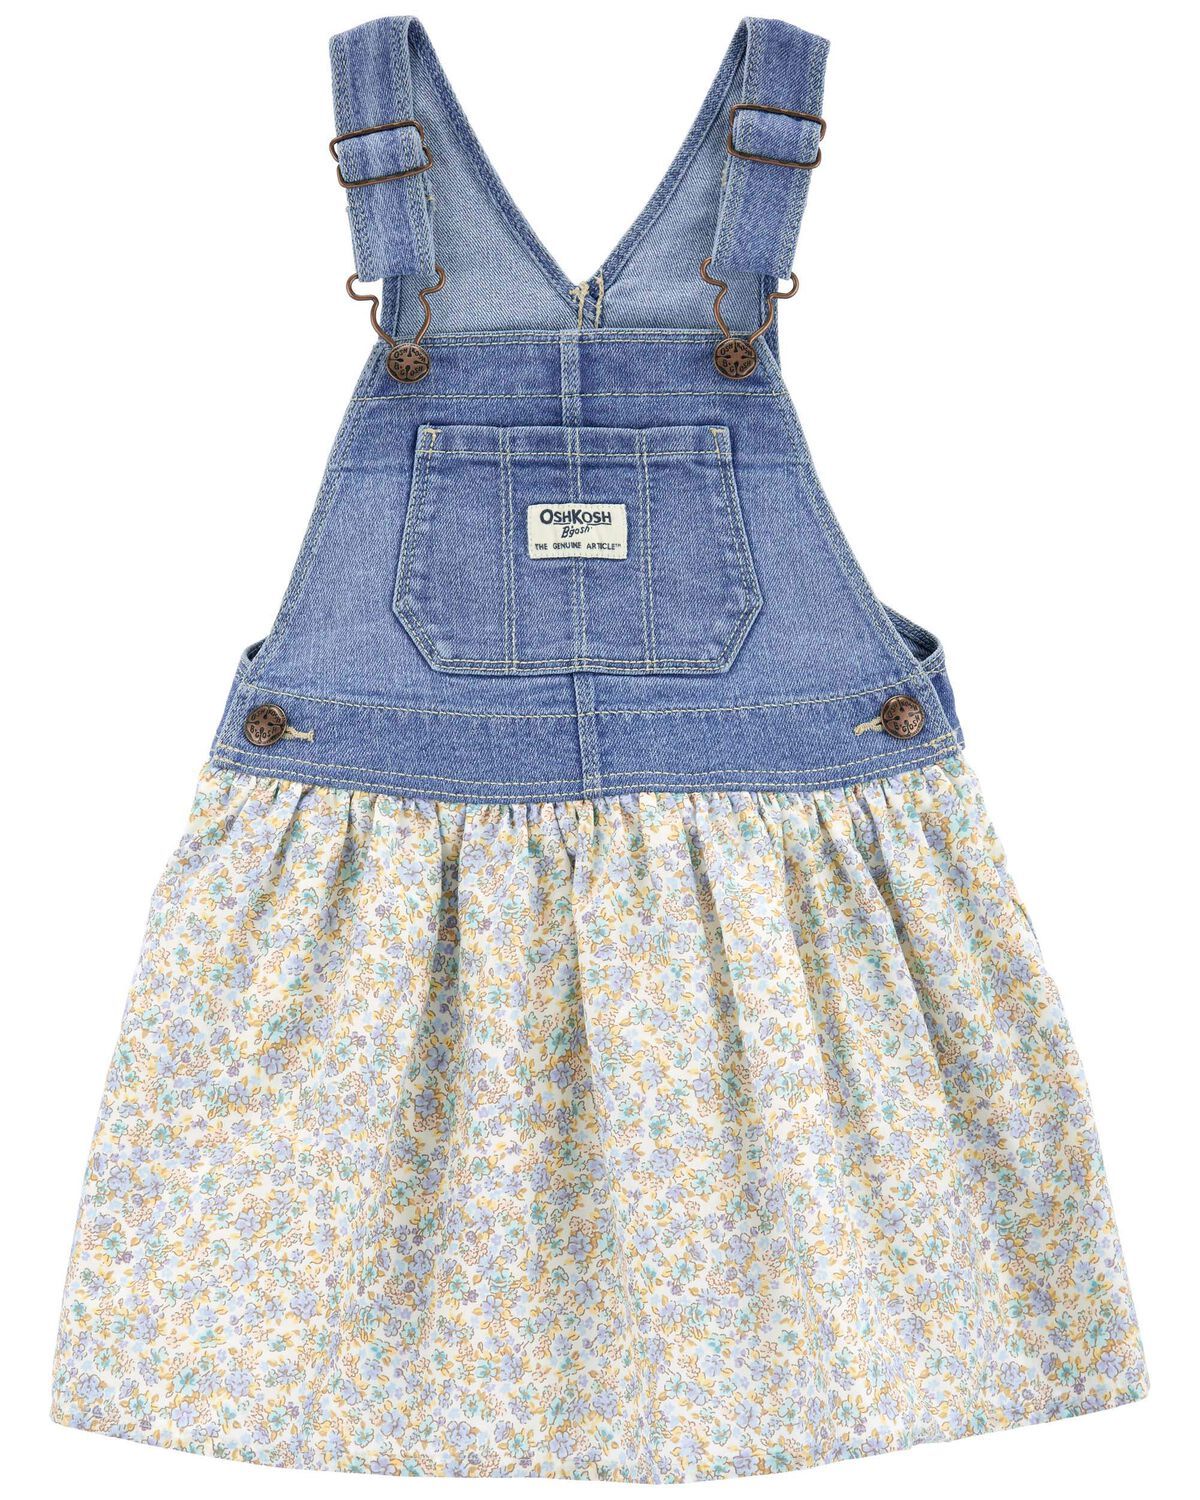 Toddler Floral Print Denim Jumper Dress | Carter's